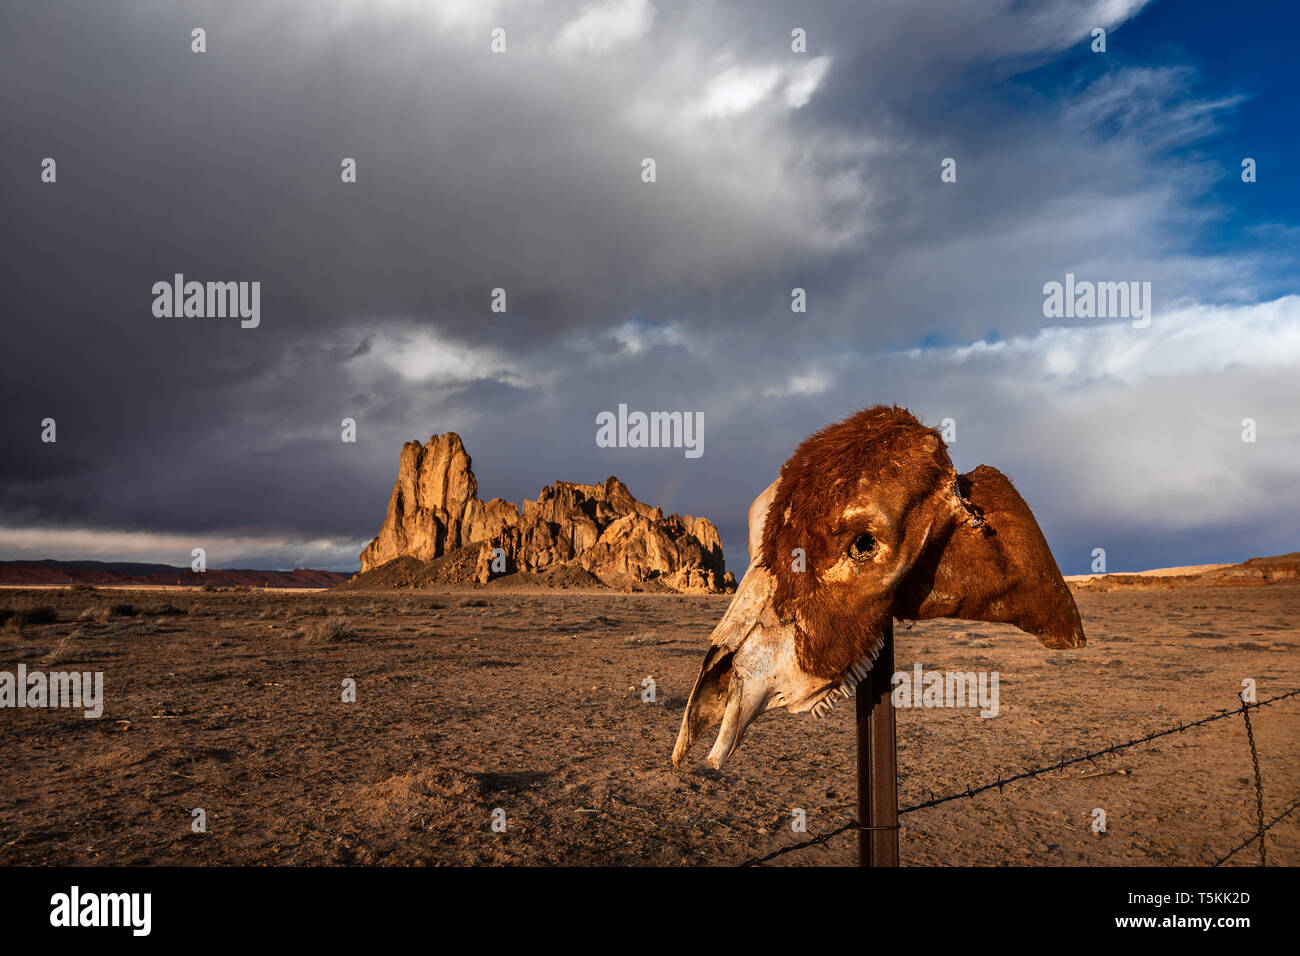 Monument Valley, Arizona désert paysage avec un crâne Banque D'Images